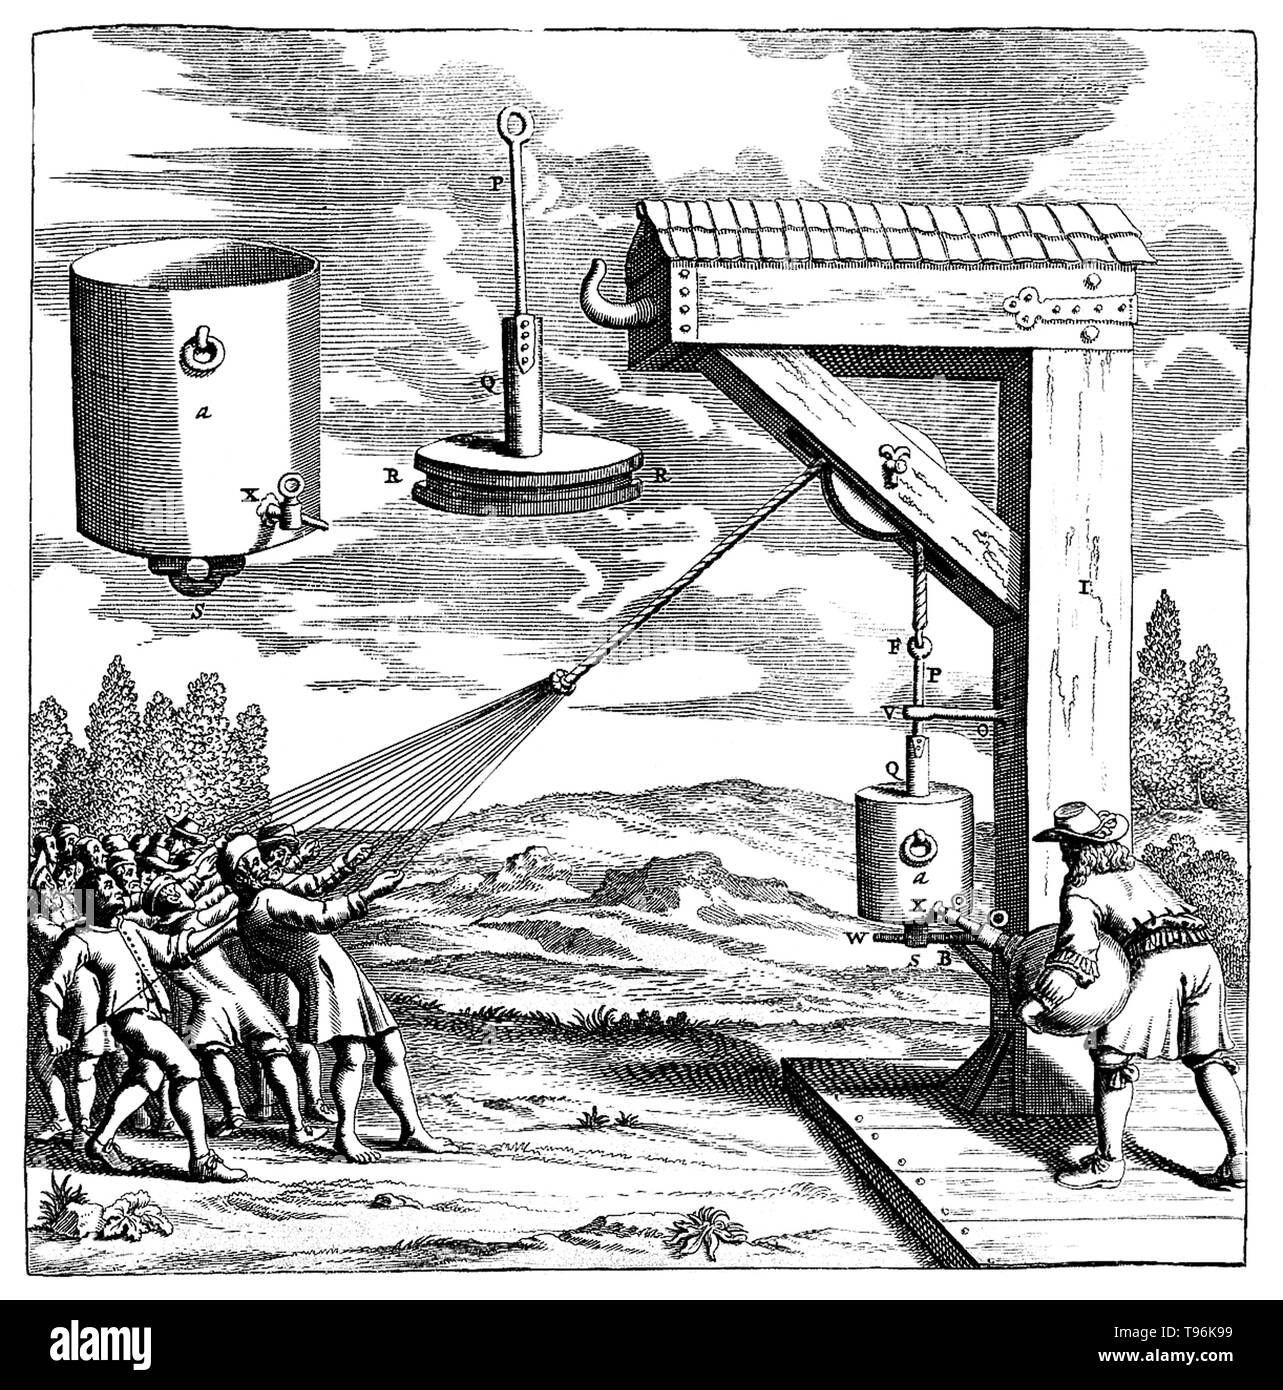 Regensburg Kolben Vakuum Experiment durchgeführt, im Jahr 1654. Diese Demonstration von atmosphärischen Druck hatte über 20 Männer ziehen an Seile nicht ein Kolben schließen, um zu vermeiden, dass sich Luft wird aus einem Zylinder gepumpt, bilden ein Vakuum. Otto-von-Guericke-Universität (November 30, 1602 - Mai 21, 1686) war ein deutscher Wissenschaftler, Erfinder und Politiker. Stockfoto